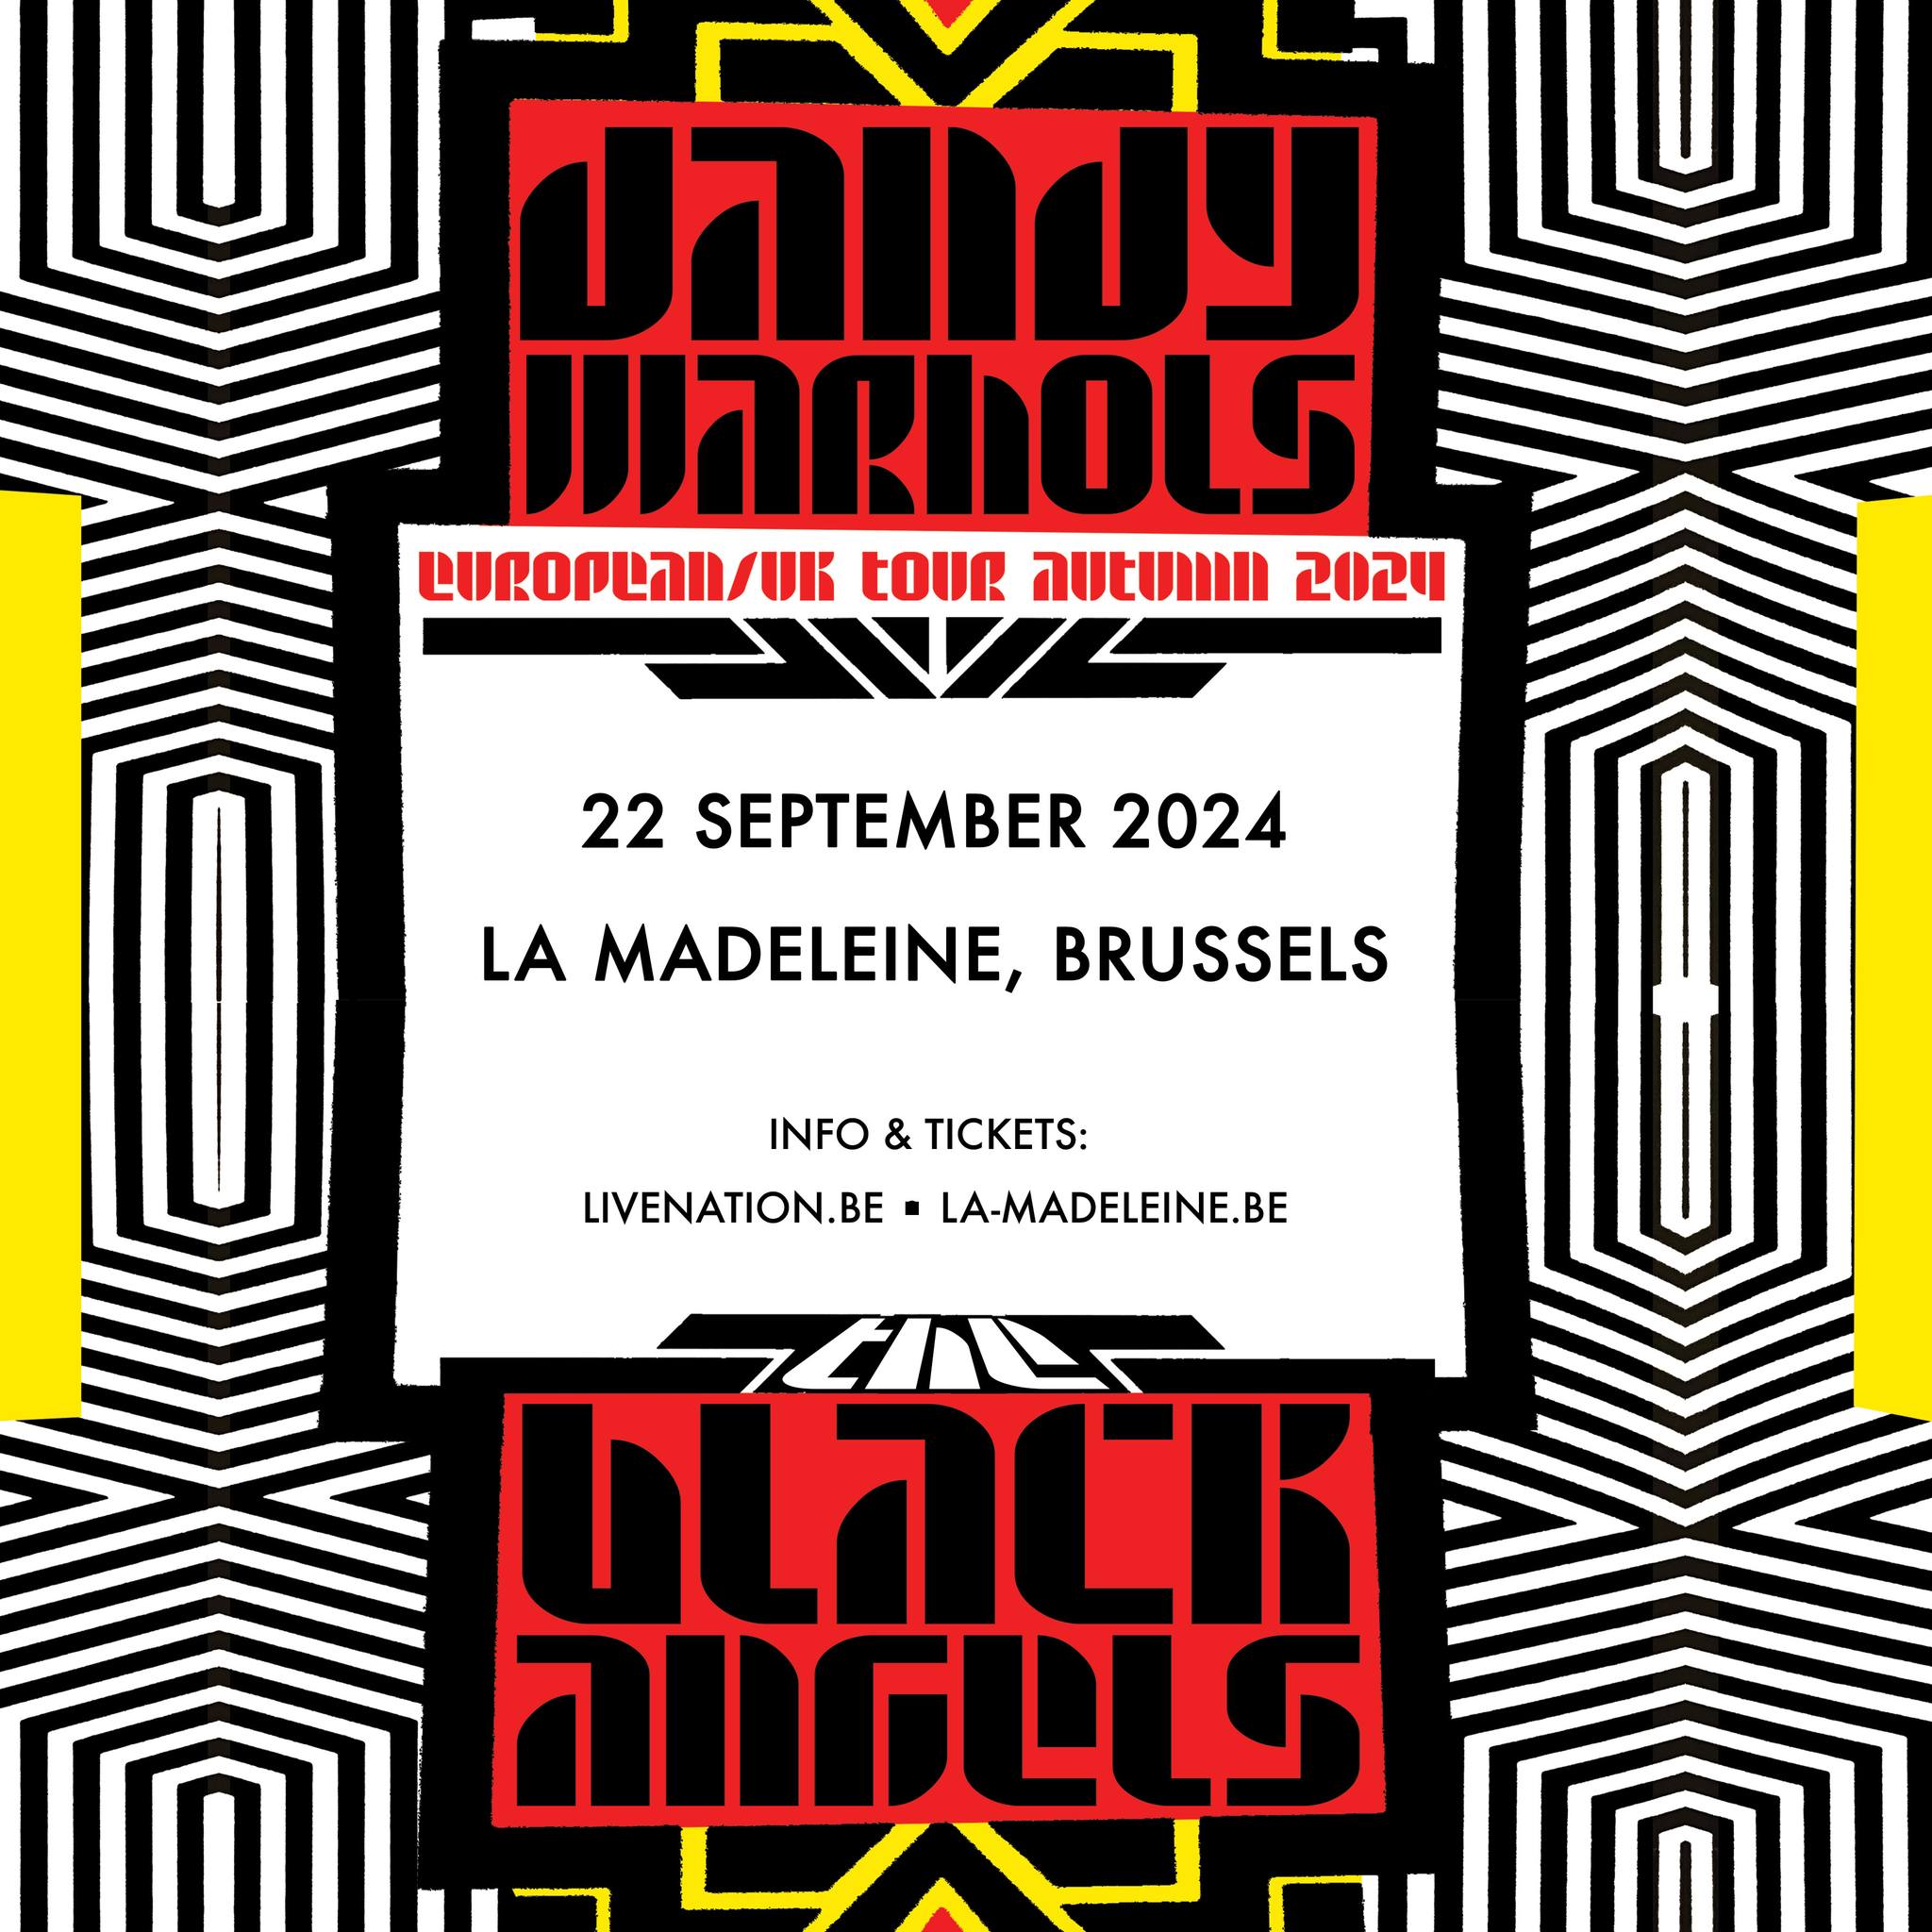 The Dandy Warhols - The Black Keys en La Madeleine Tickets